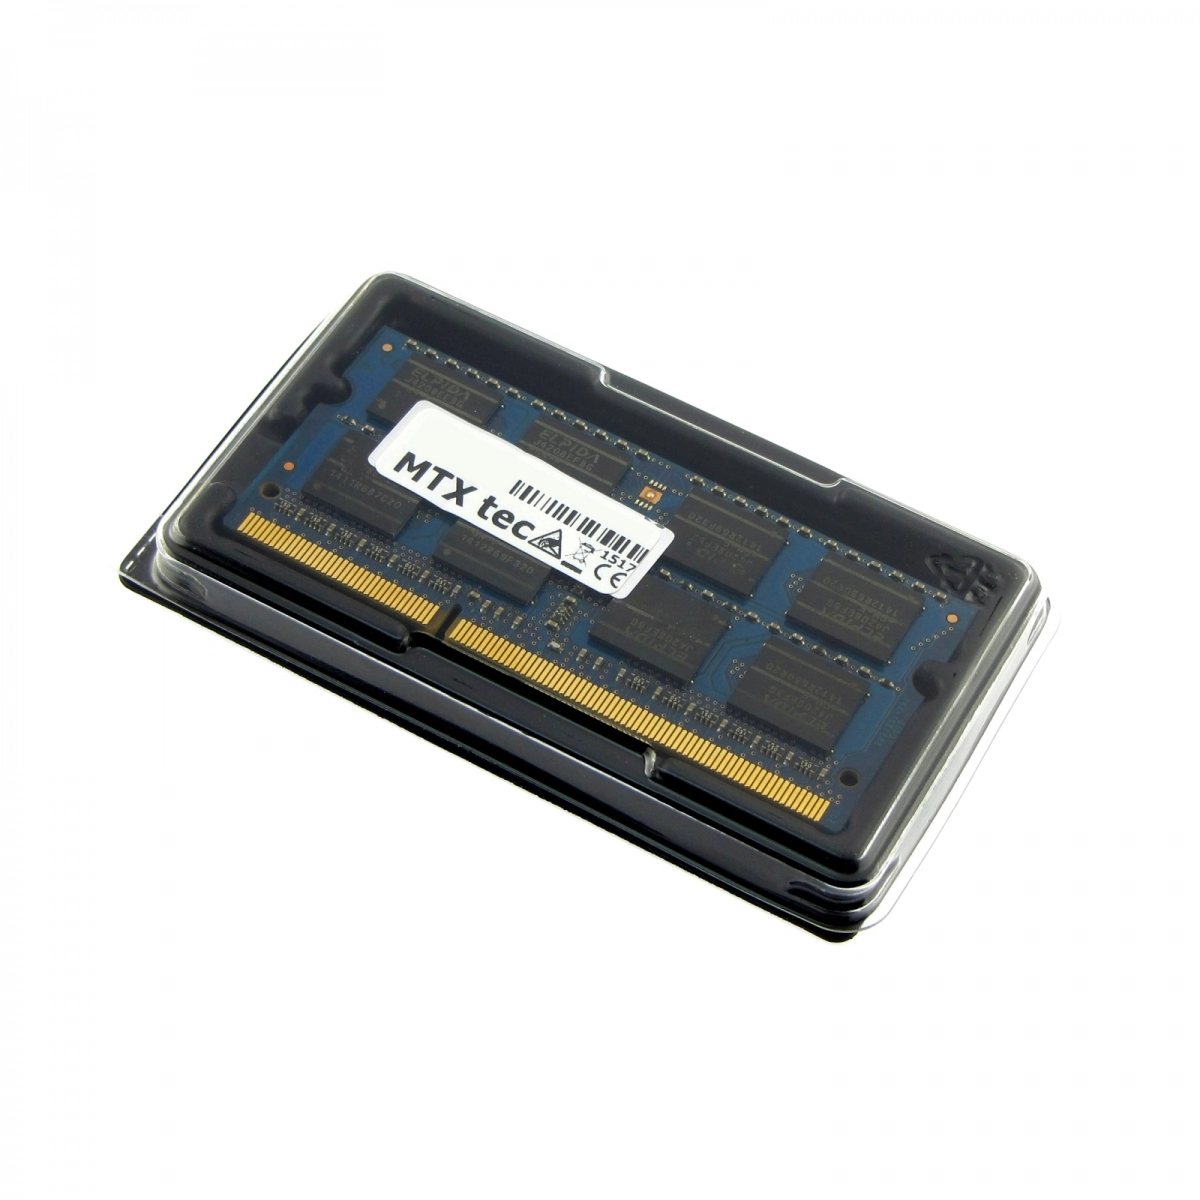 MTXtec Arbeitsspeicher 8 GB RAM für ASUS R704